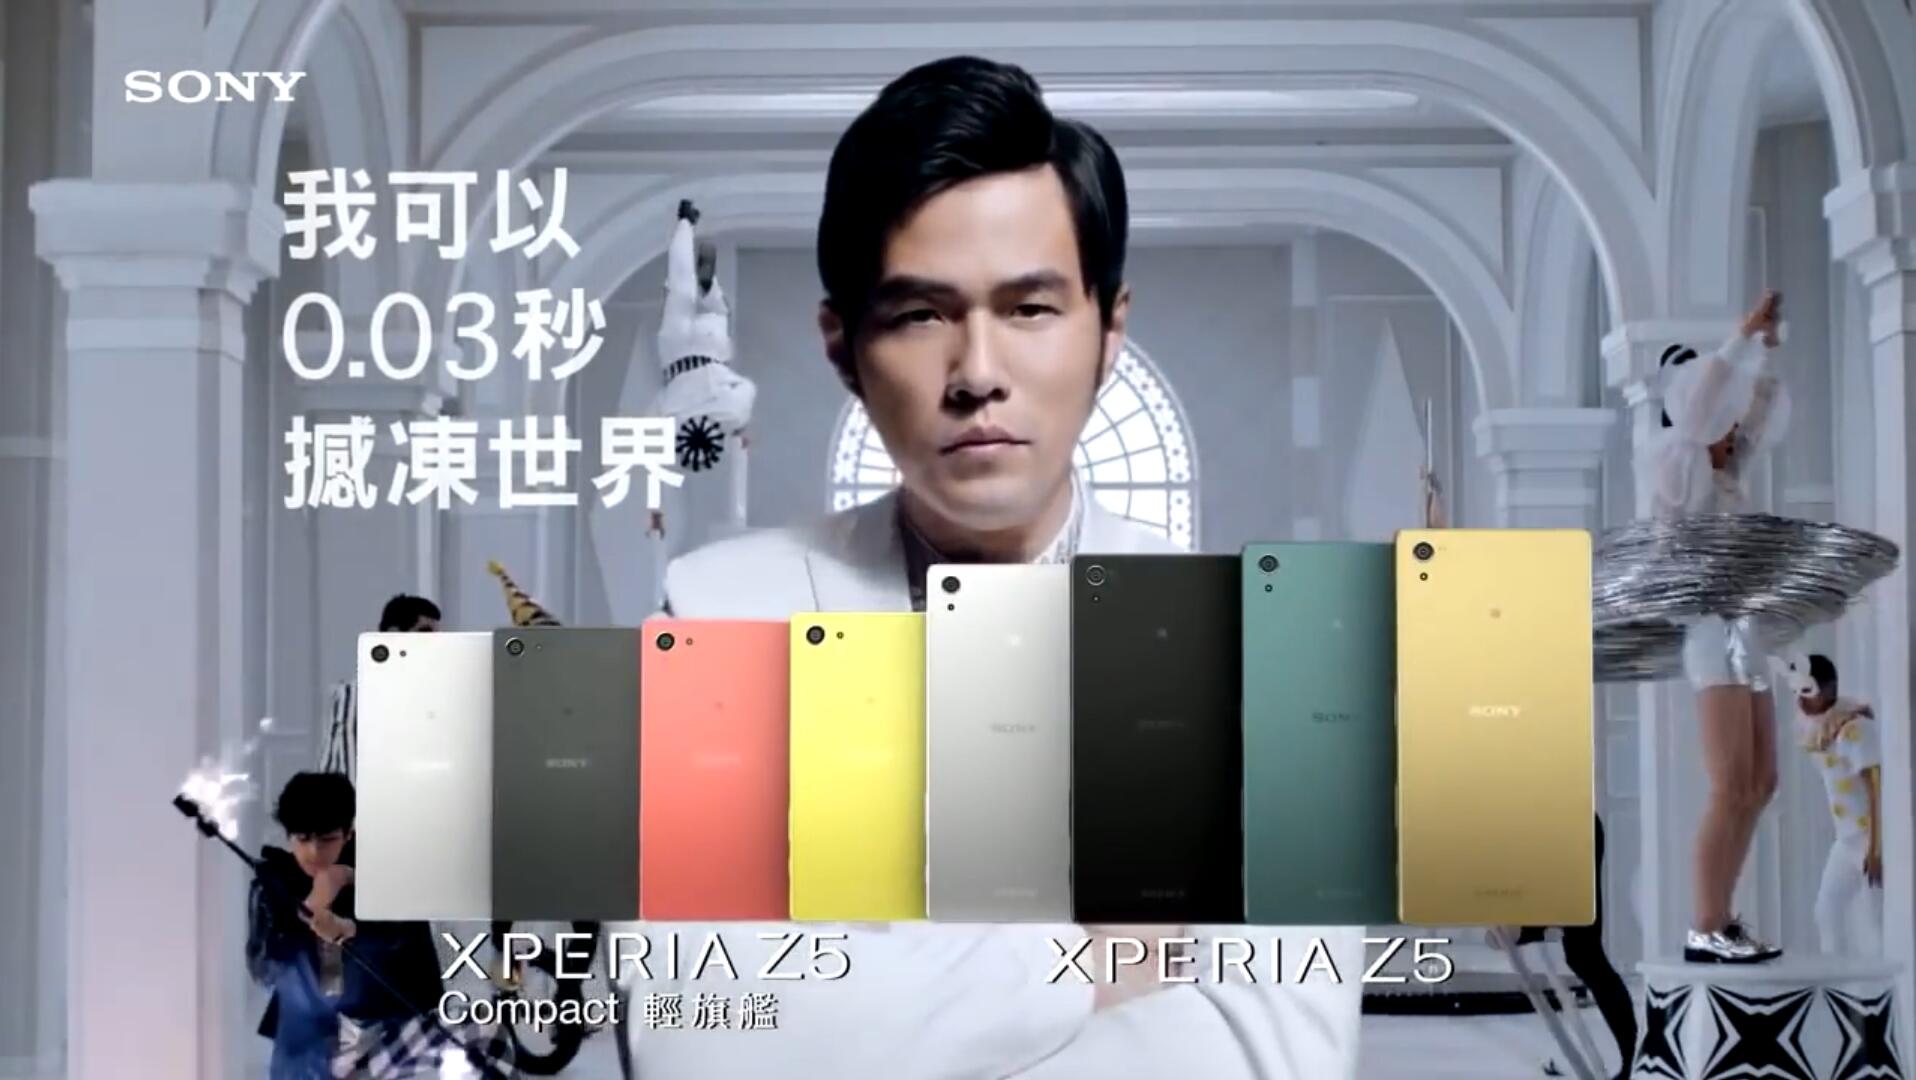 周杰伦Jay Chou-2015年代言Xperia Z5 广告